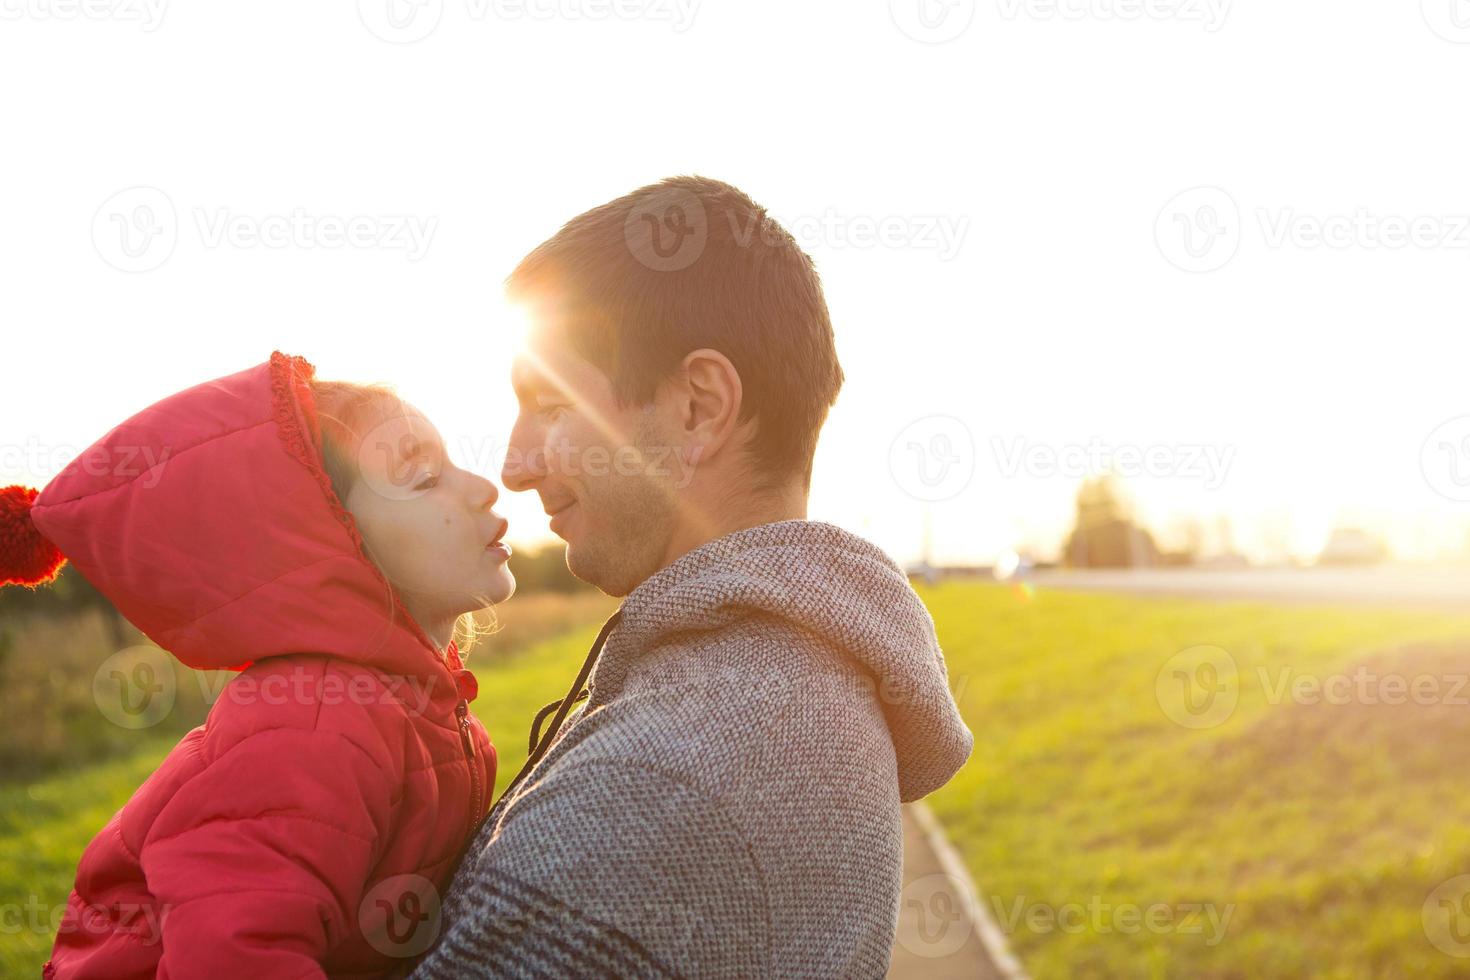 niñita con chaqueta roja con capucha abraza y besa a su papá, sonríe, toca su nariz. familia feliz, emociones de los niños, día del padre, rayos brillantes del sol, apariencia caucásica. espacio para texto. foto